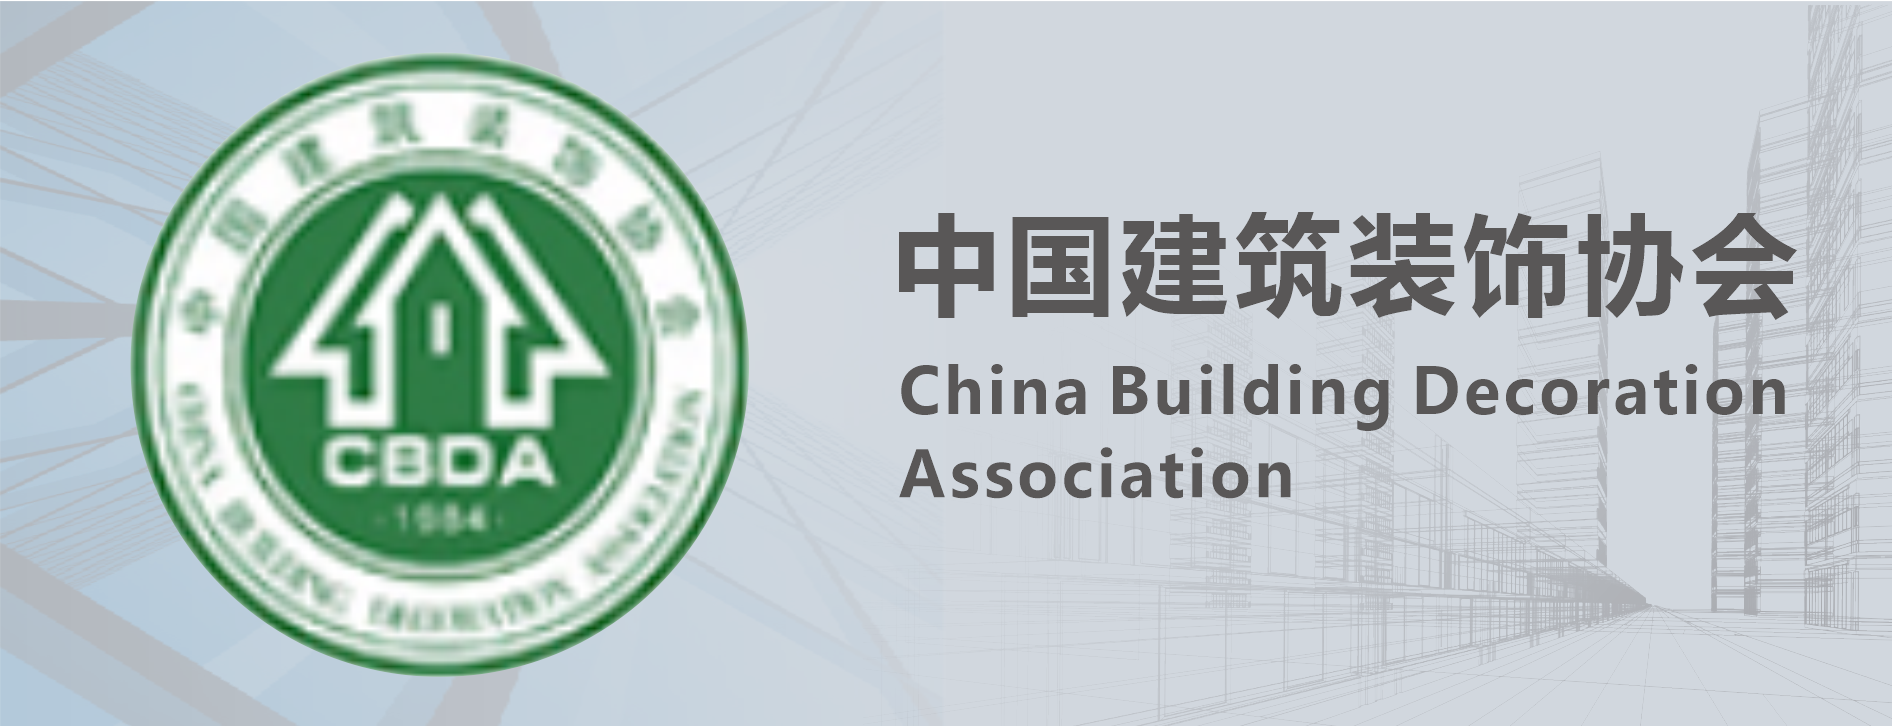 中國建筑裝飾協會